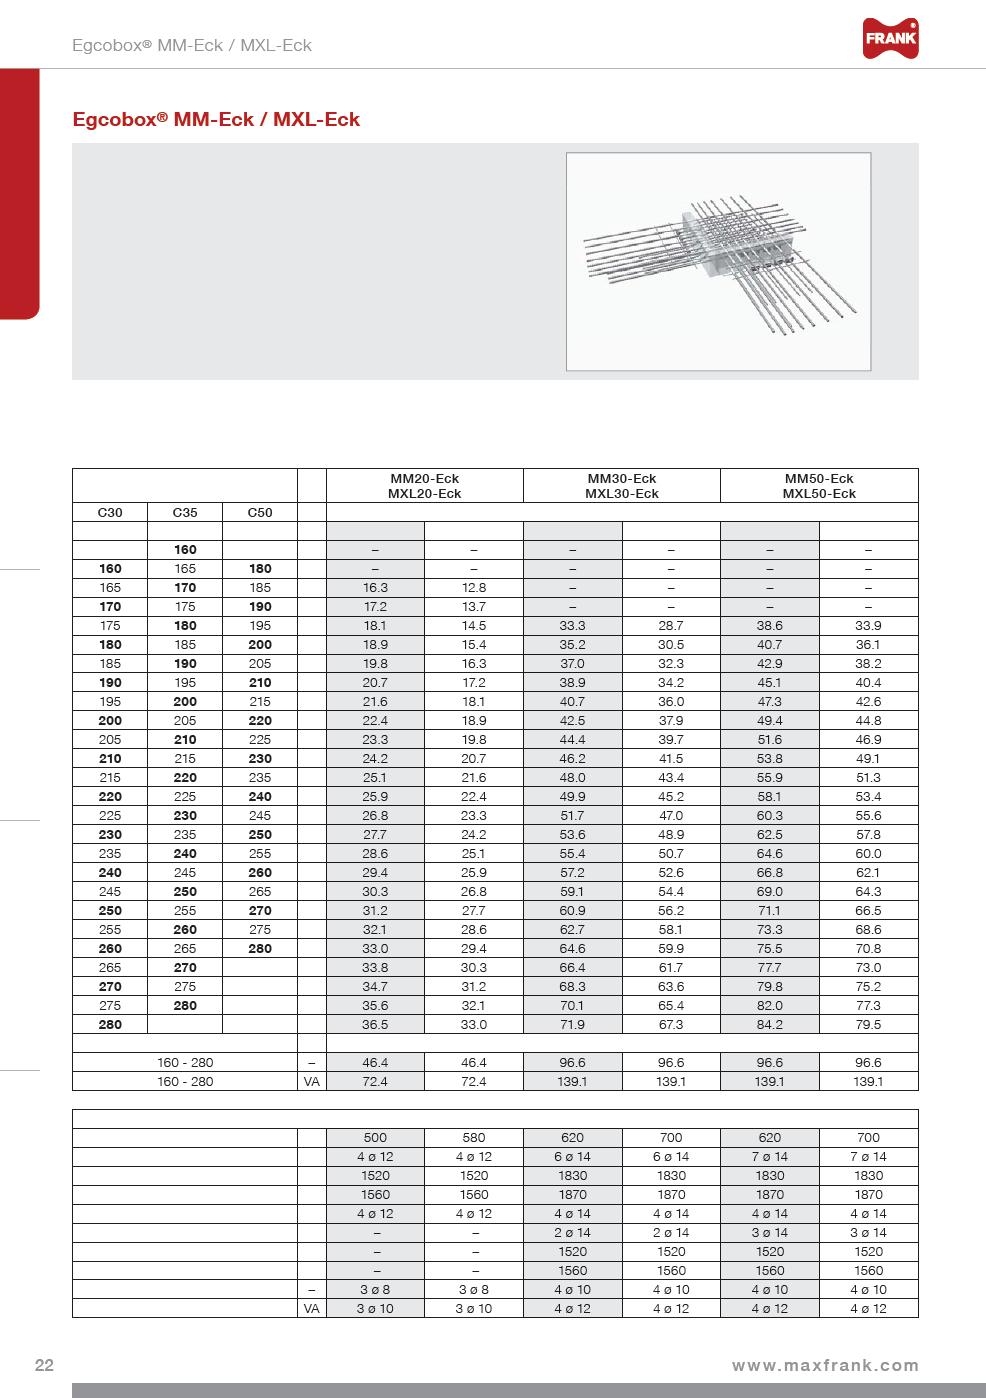 Speciální prvky Další standardní prvky Atiky, konzoly, parapety Podepřené balkony K Konzolové balkony Technická data Tloušťka stropu: h = 160 280 mm Šířka spáry MM-Eck: f = 80 mm Šířka spáry MXL-Eck: